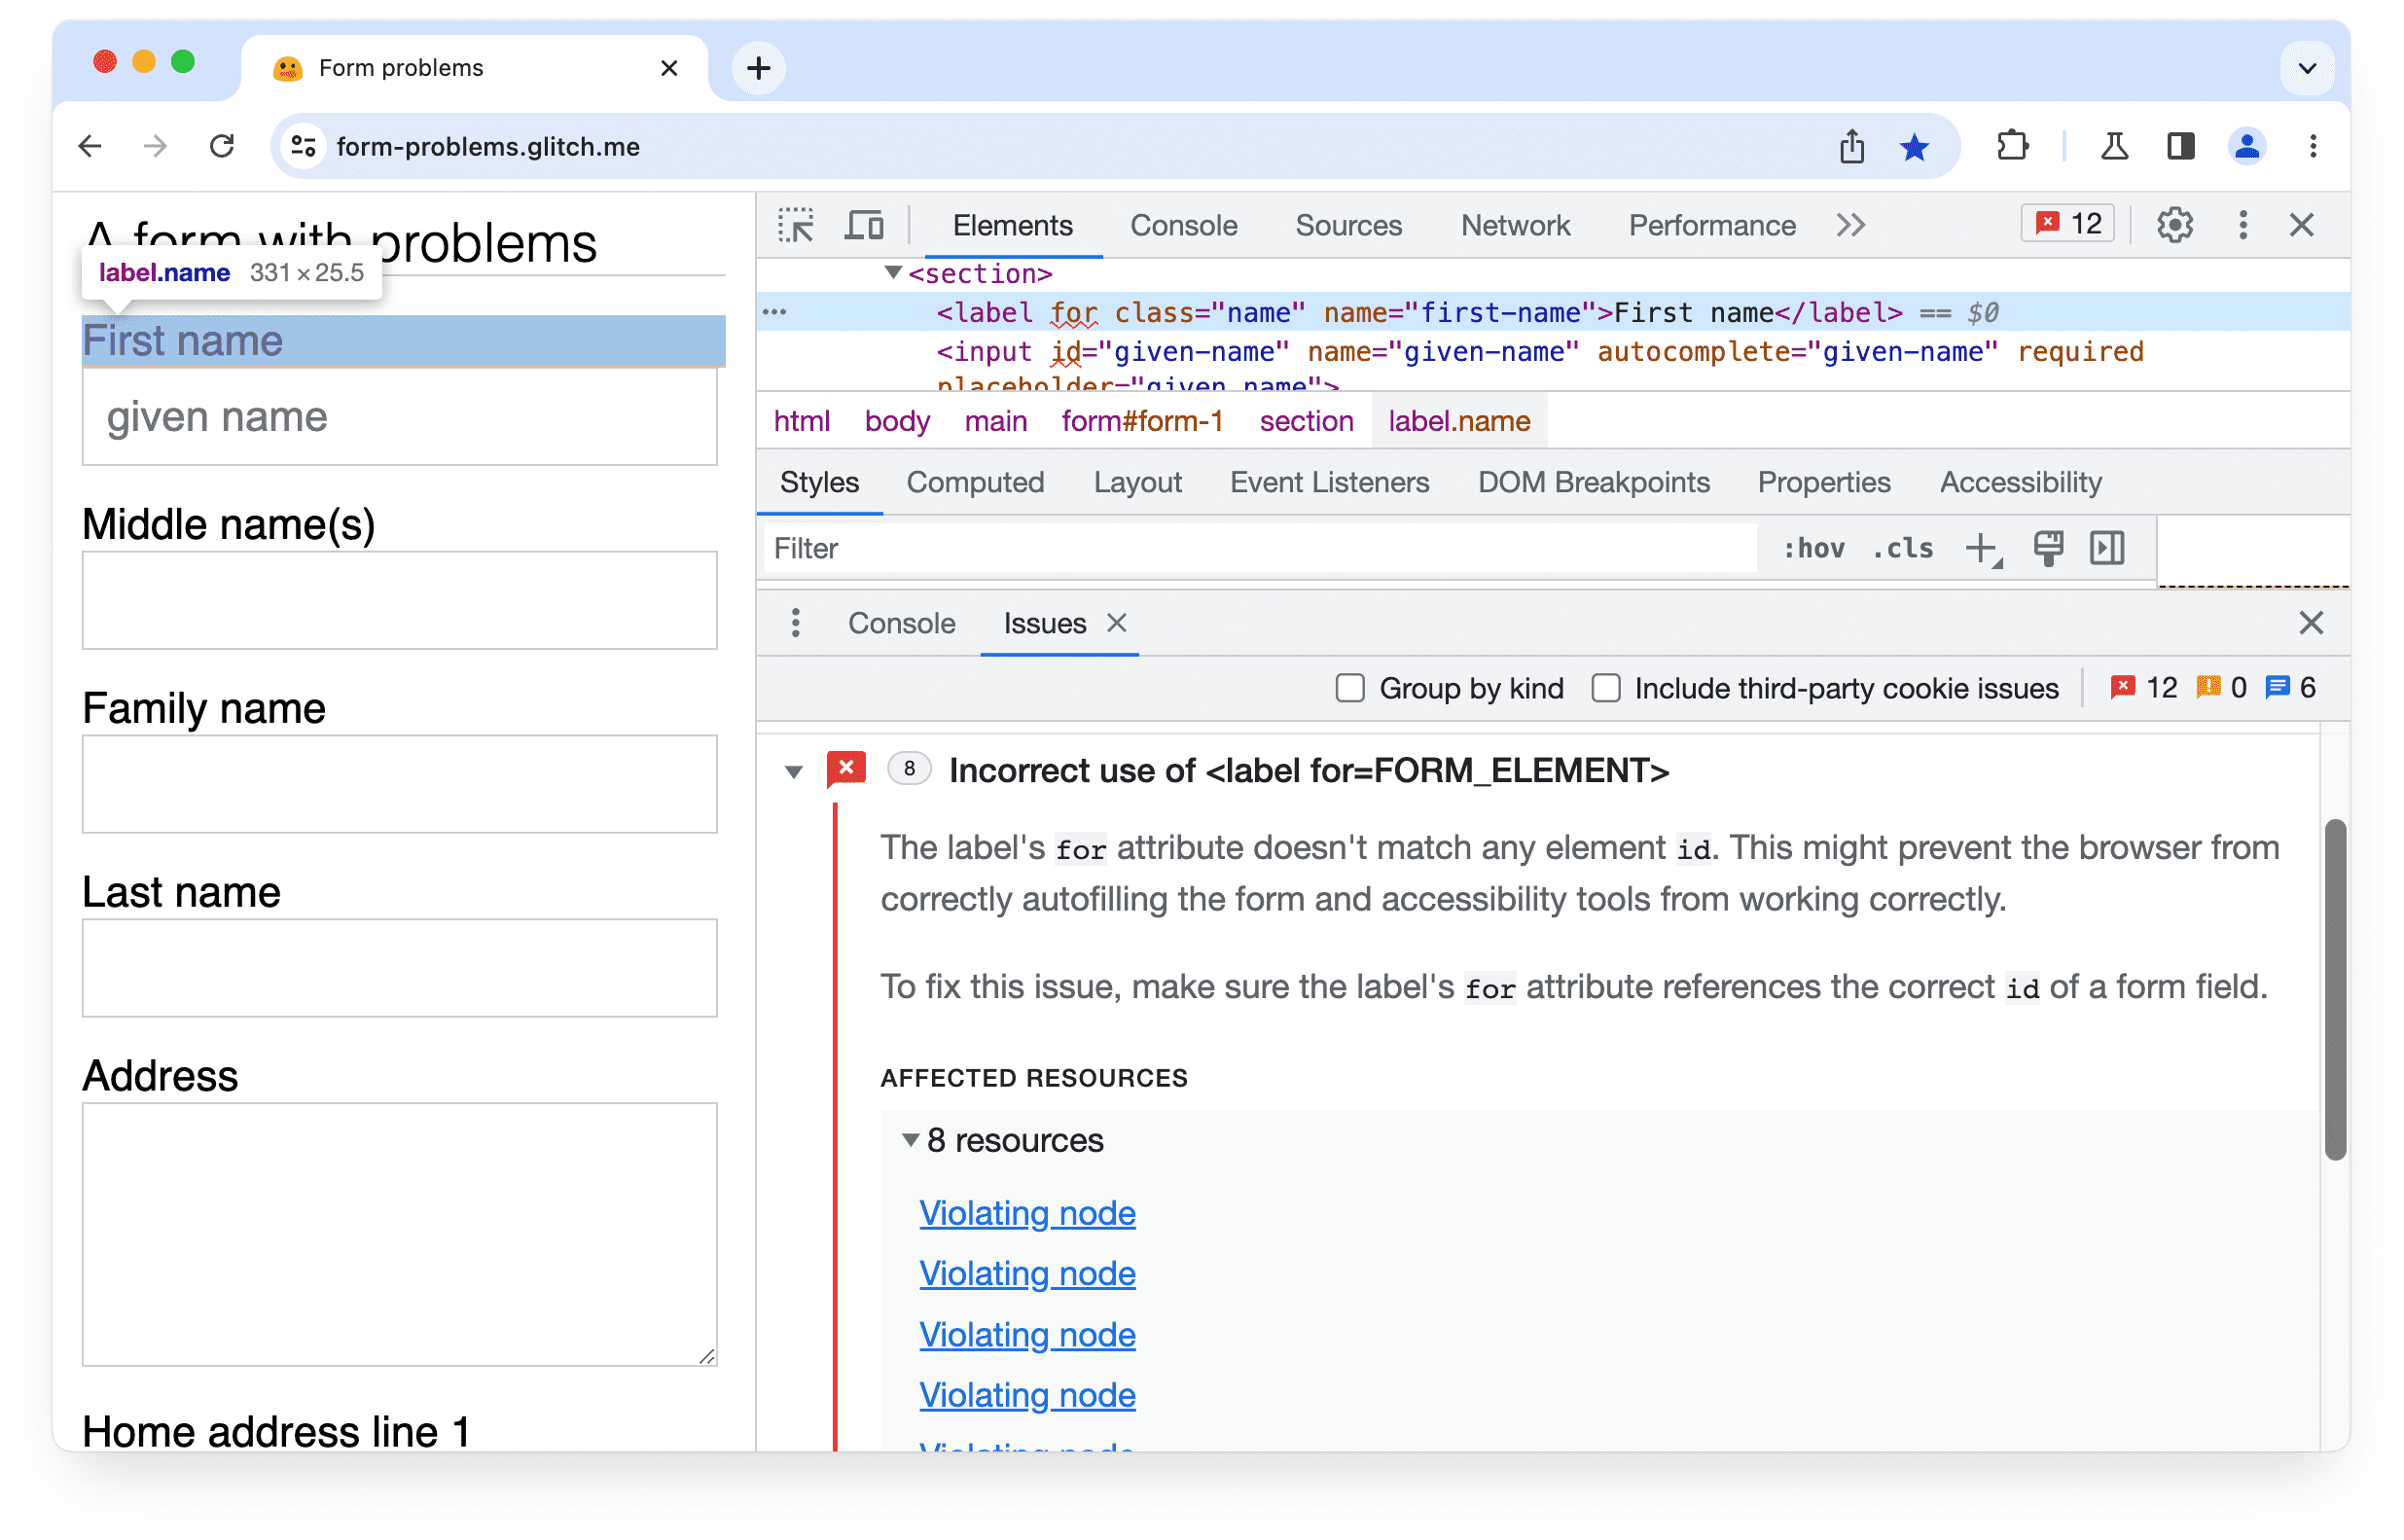 Erweitertes Problem in den Chrome-Entwicklertools: Falsche Verwendung des Labels für ein Attribut.